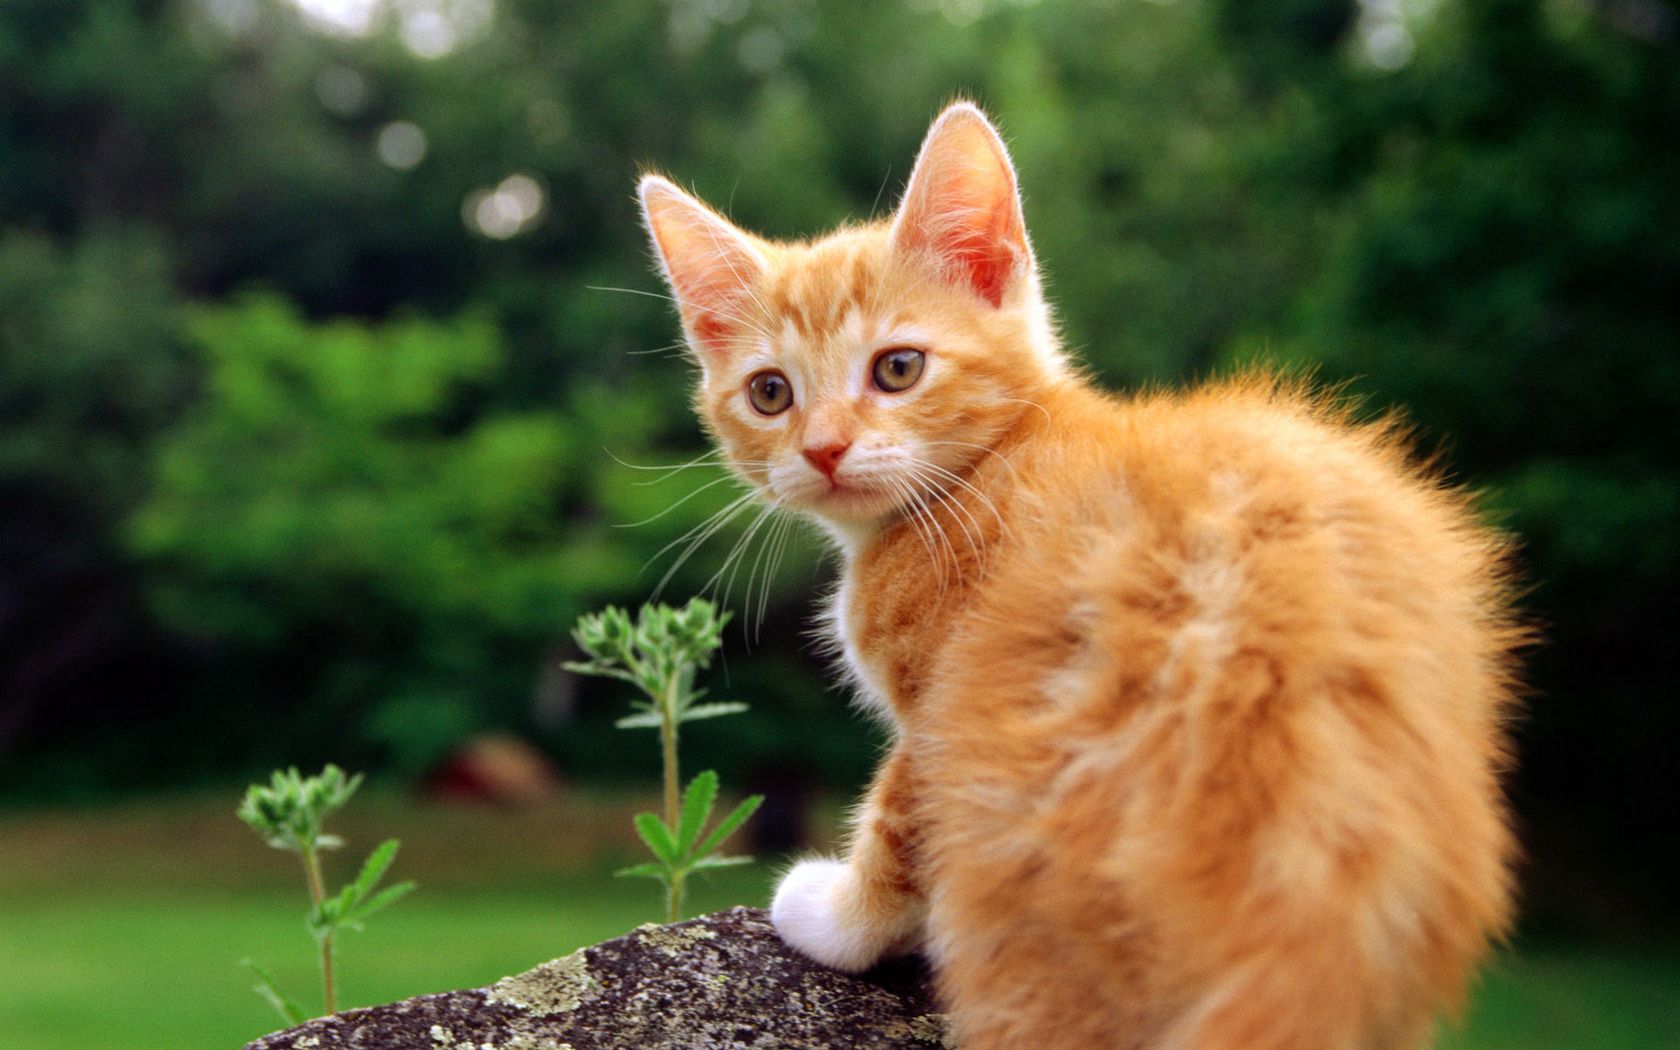 Popular Kitten Image for Phone